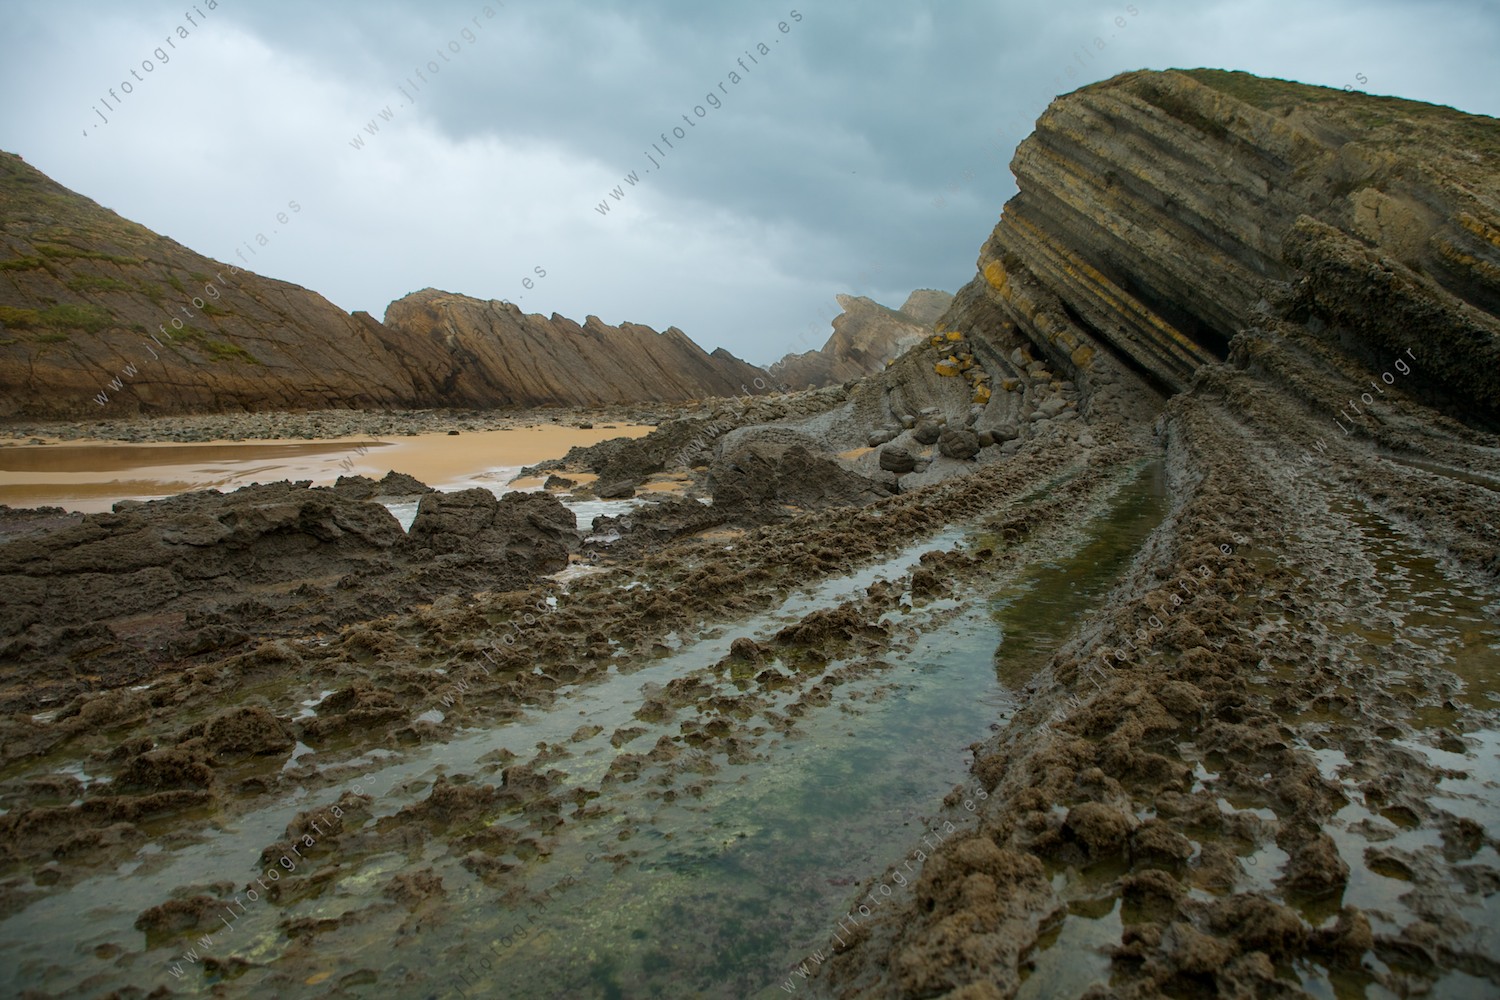 Fotografía de paisaje de la costa quebrada en Liencres, Cantabria, un lugar espectacular